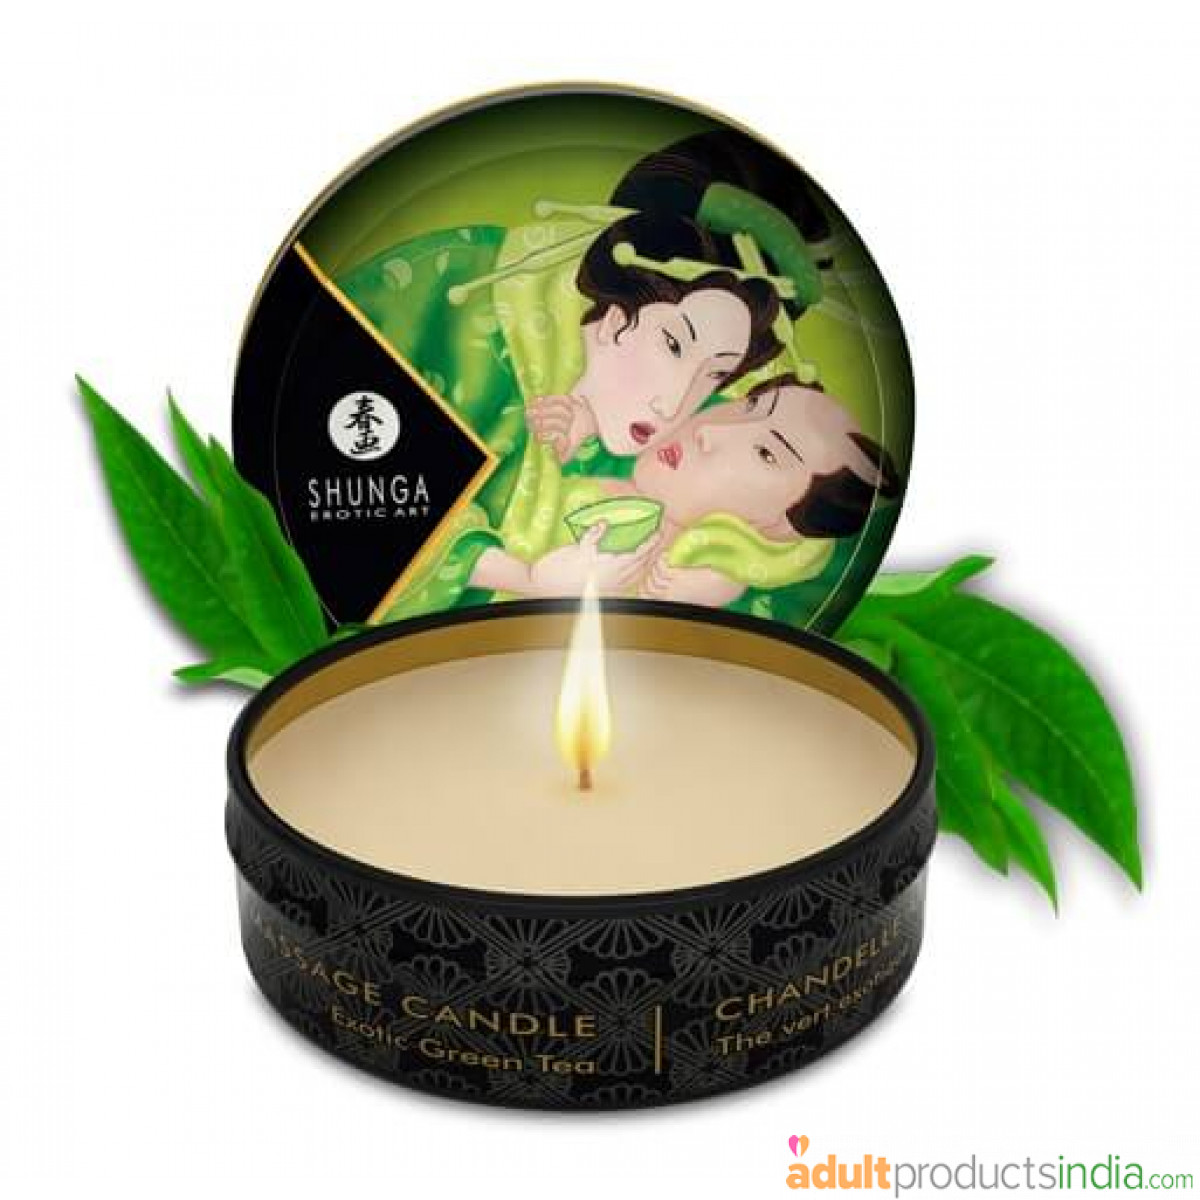 Shunga Japanese Massage Candle - Exotic Green Tea